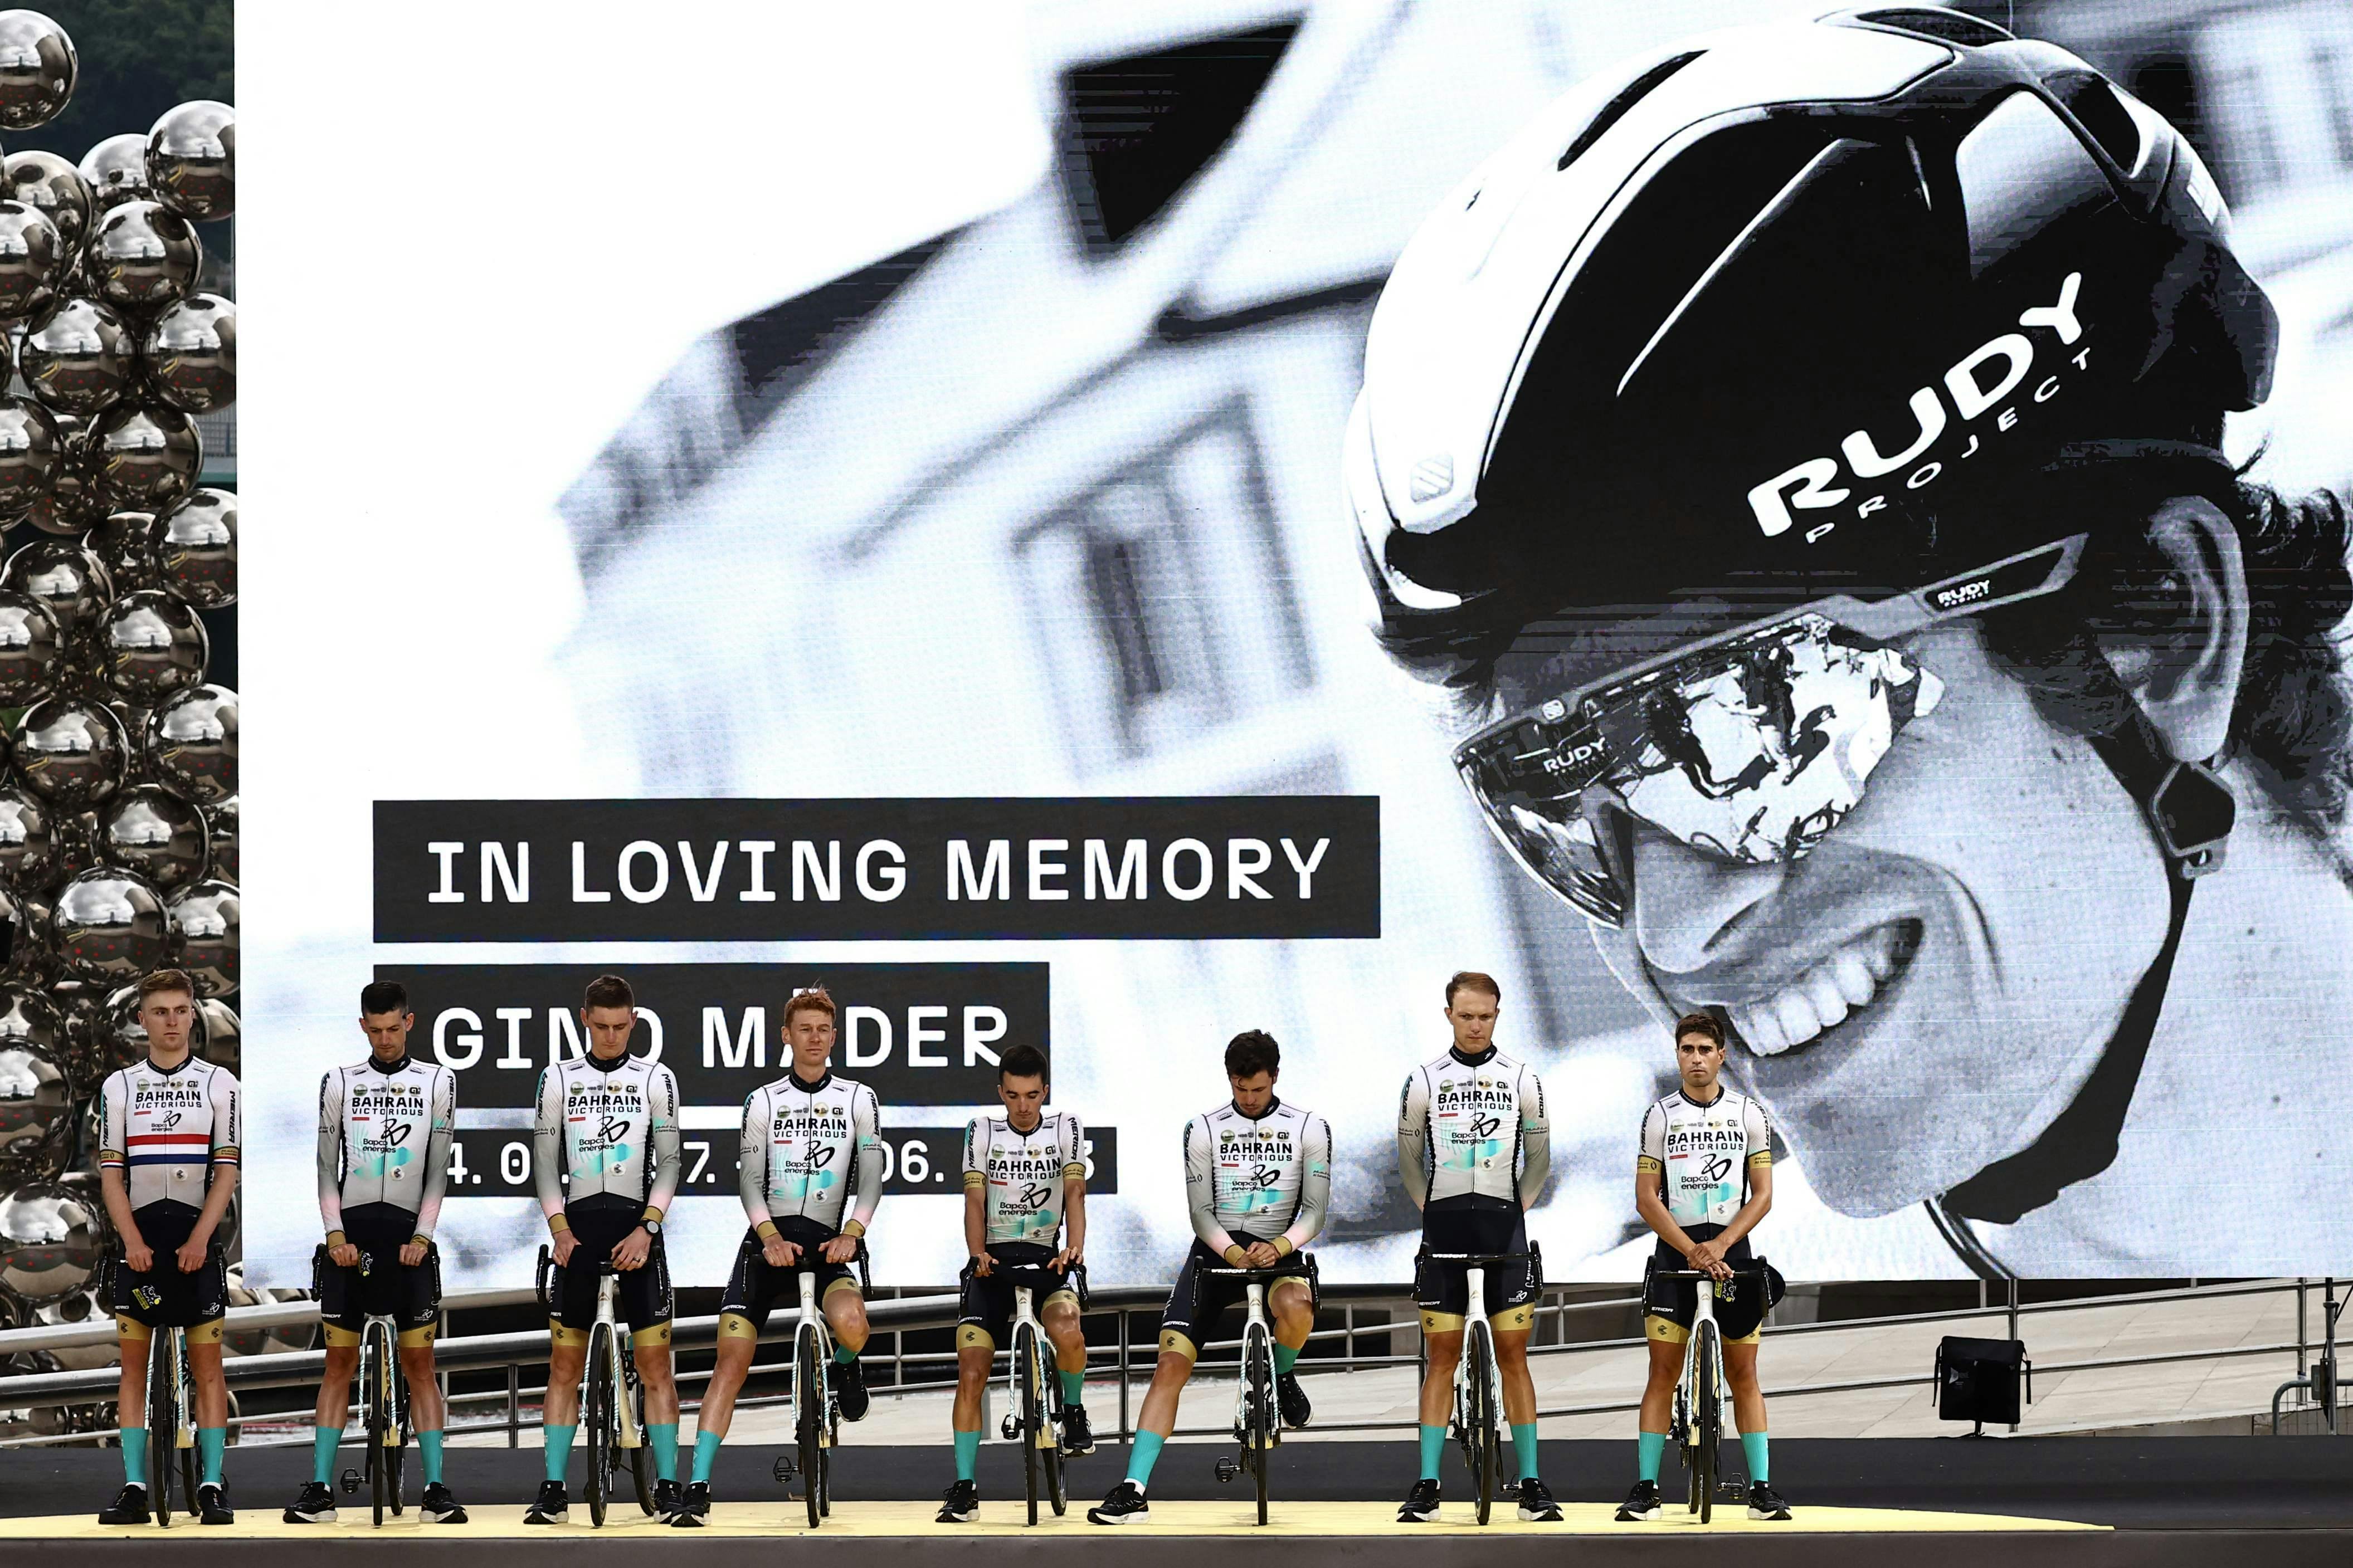 Den schweiziske cykelrytter Gino Mäder døde, efter han styrtede voldsom ned ad en skrænt under etapeløbet Schweiz Rundt.